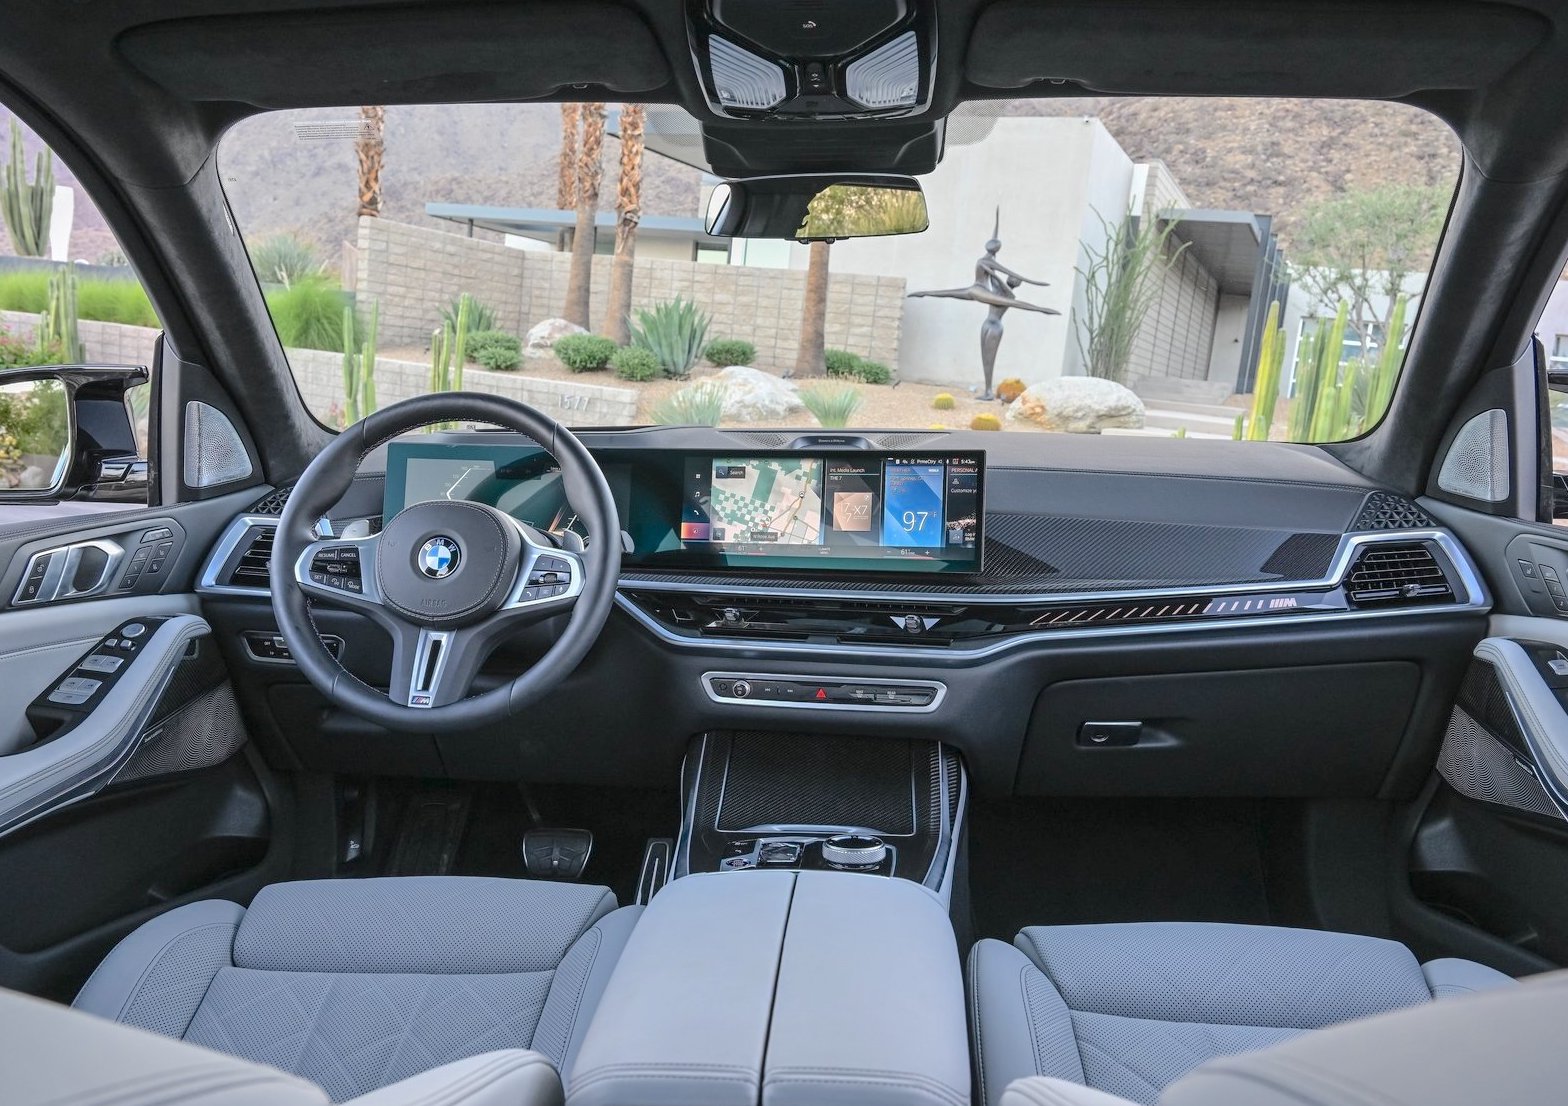 BMW X7 cabin